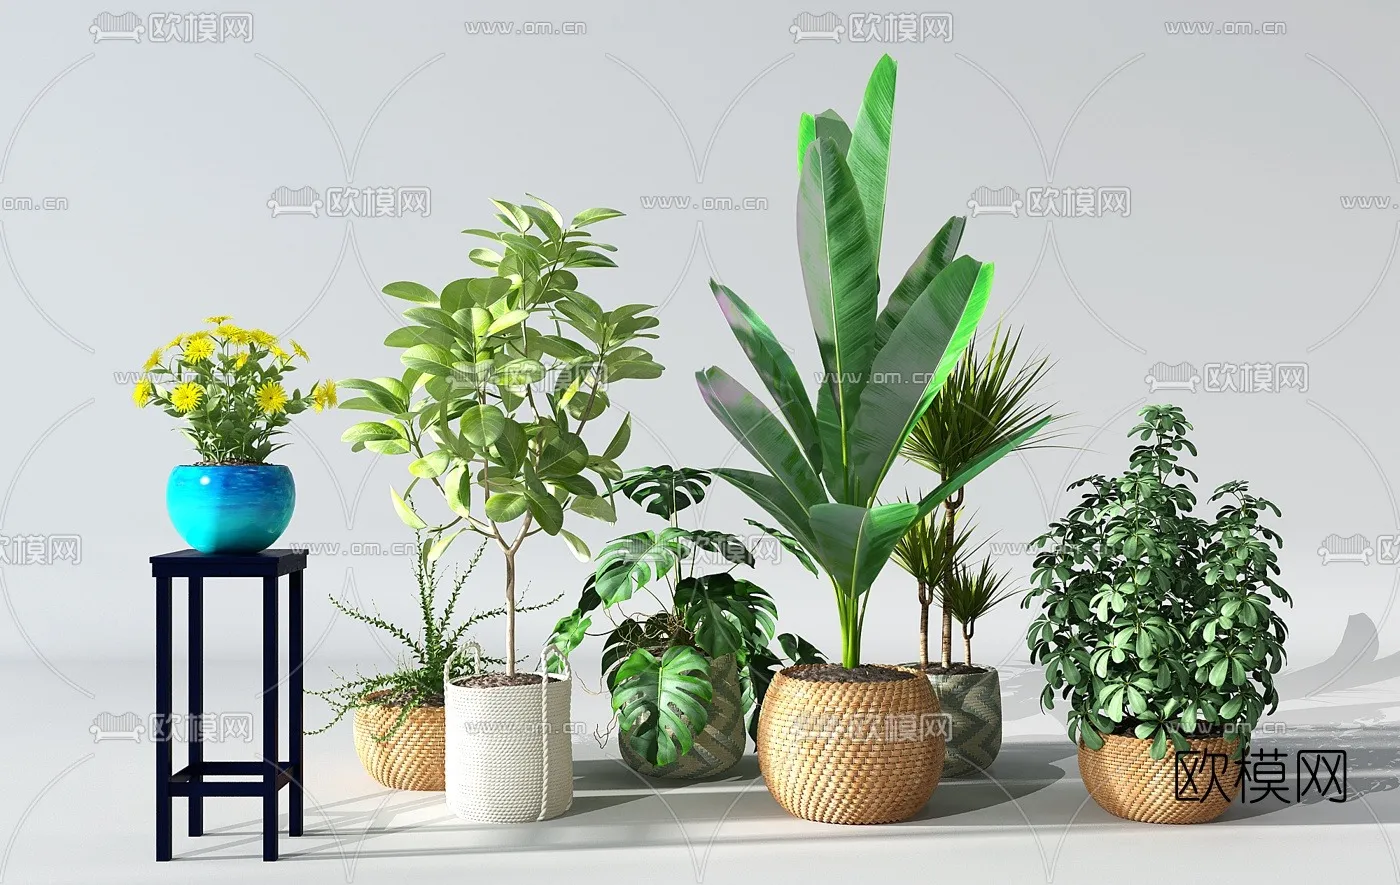 PLANT 3D MODELS – 042